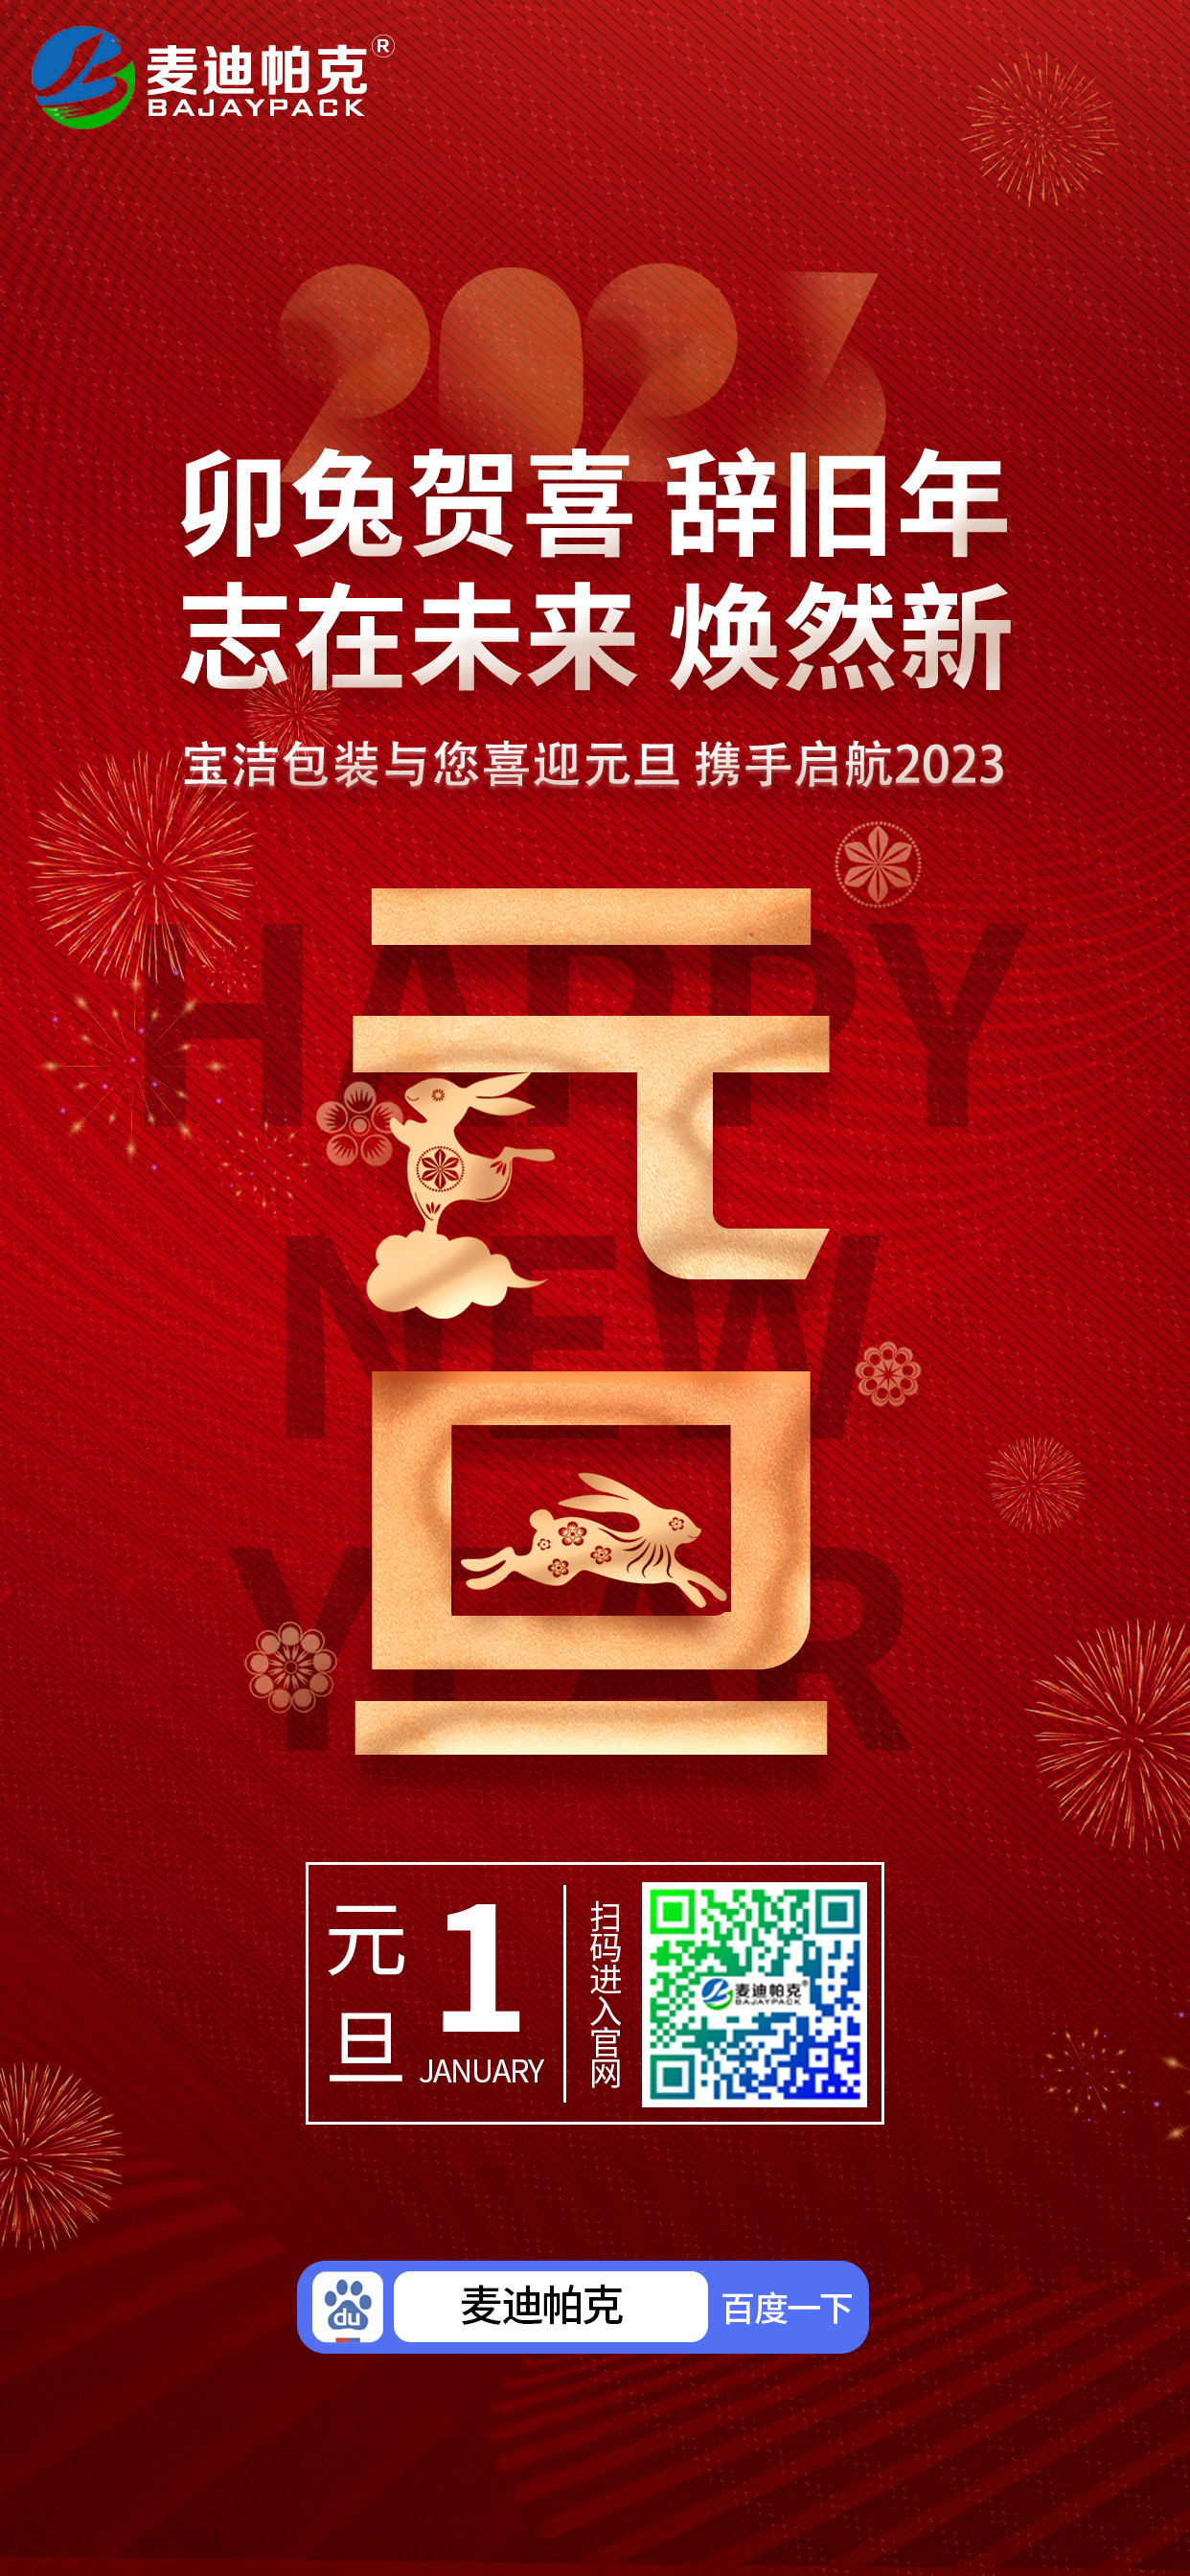 安庆市宝洁包装有限公司祝大家元旦快乐！